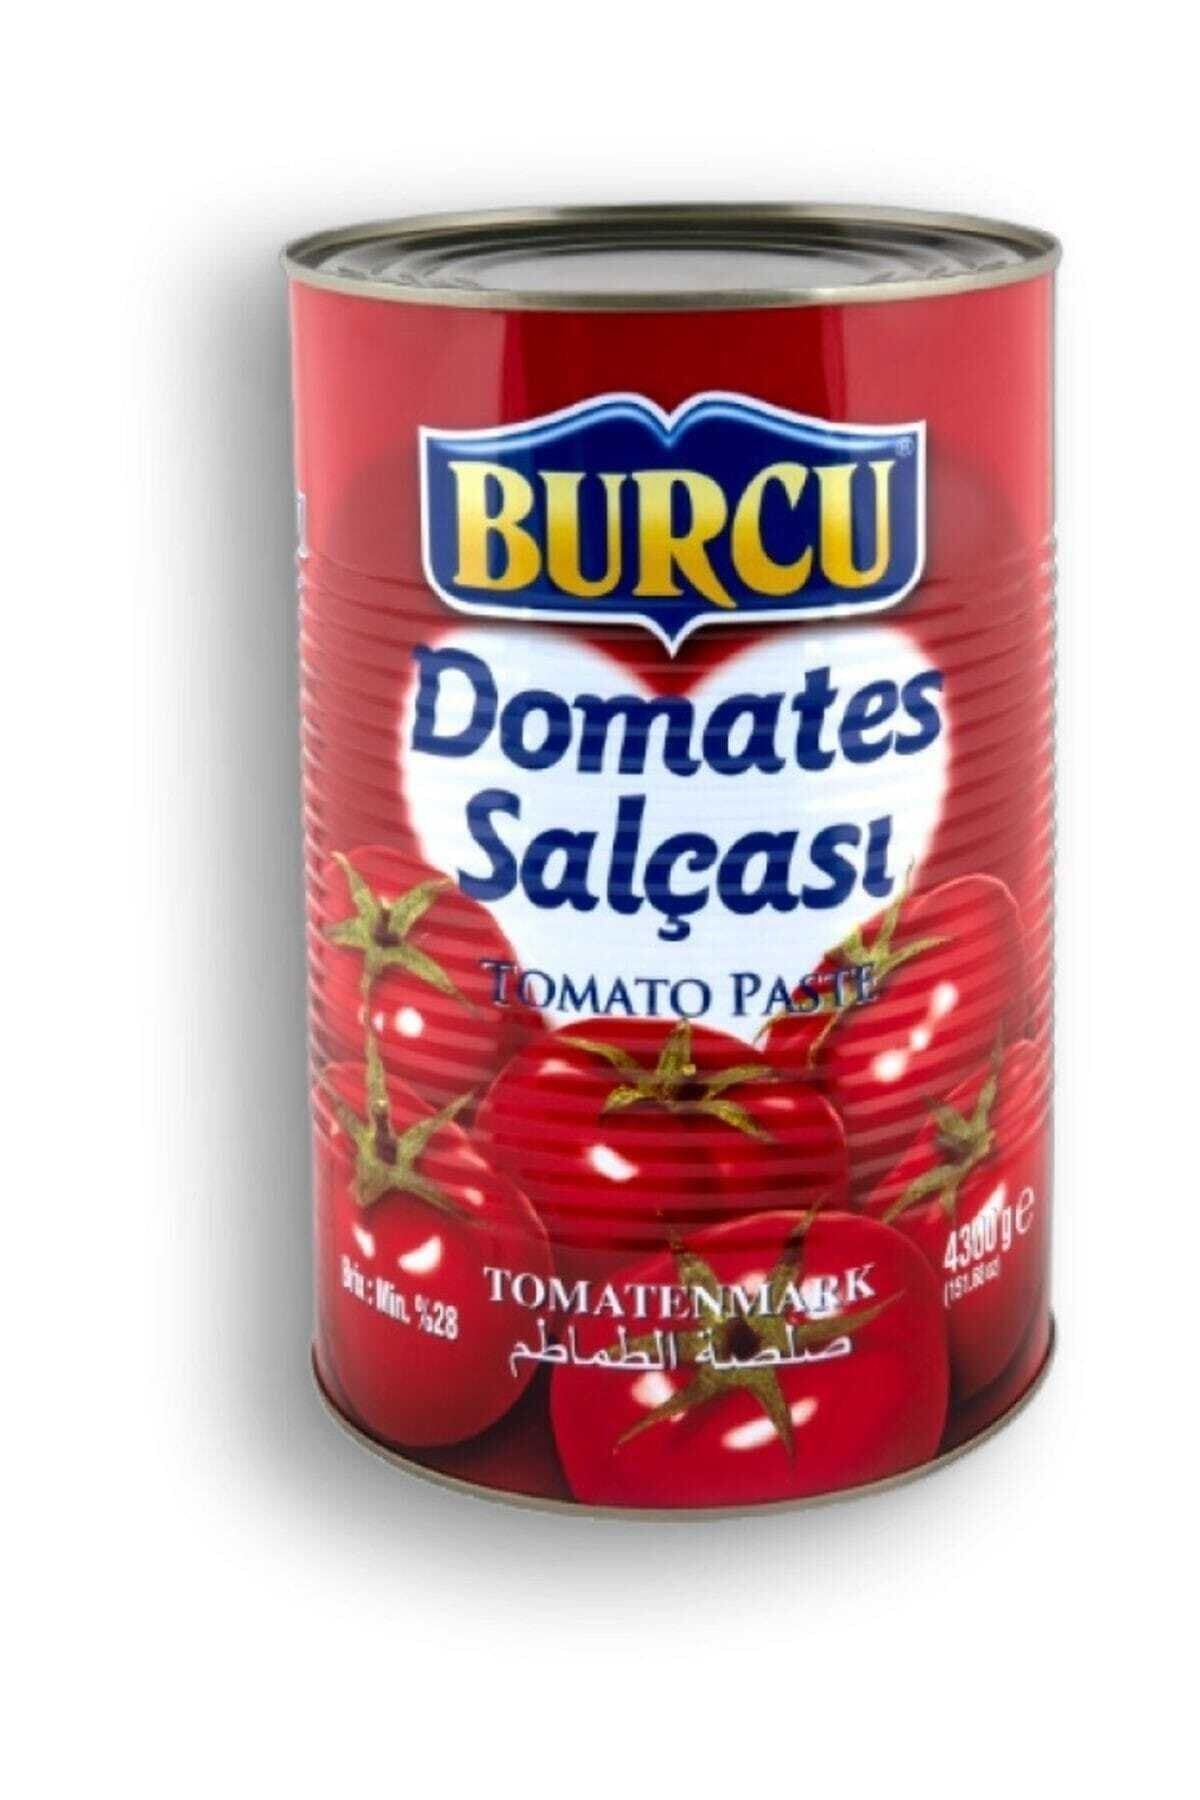 BURCU Domates Salçası 4300 gr